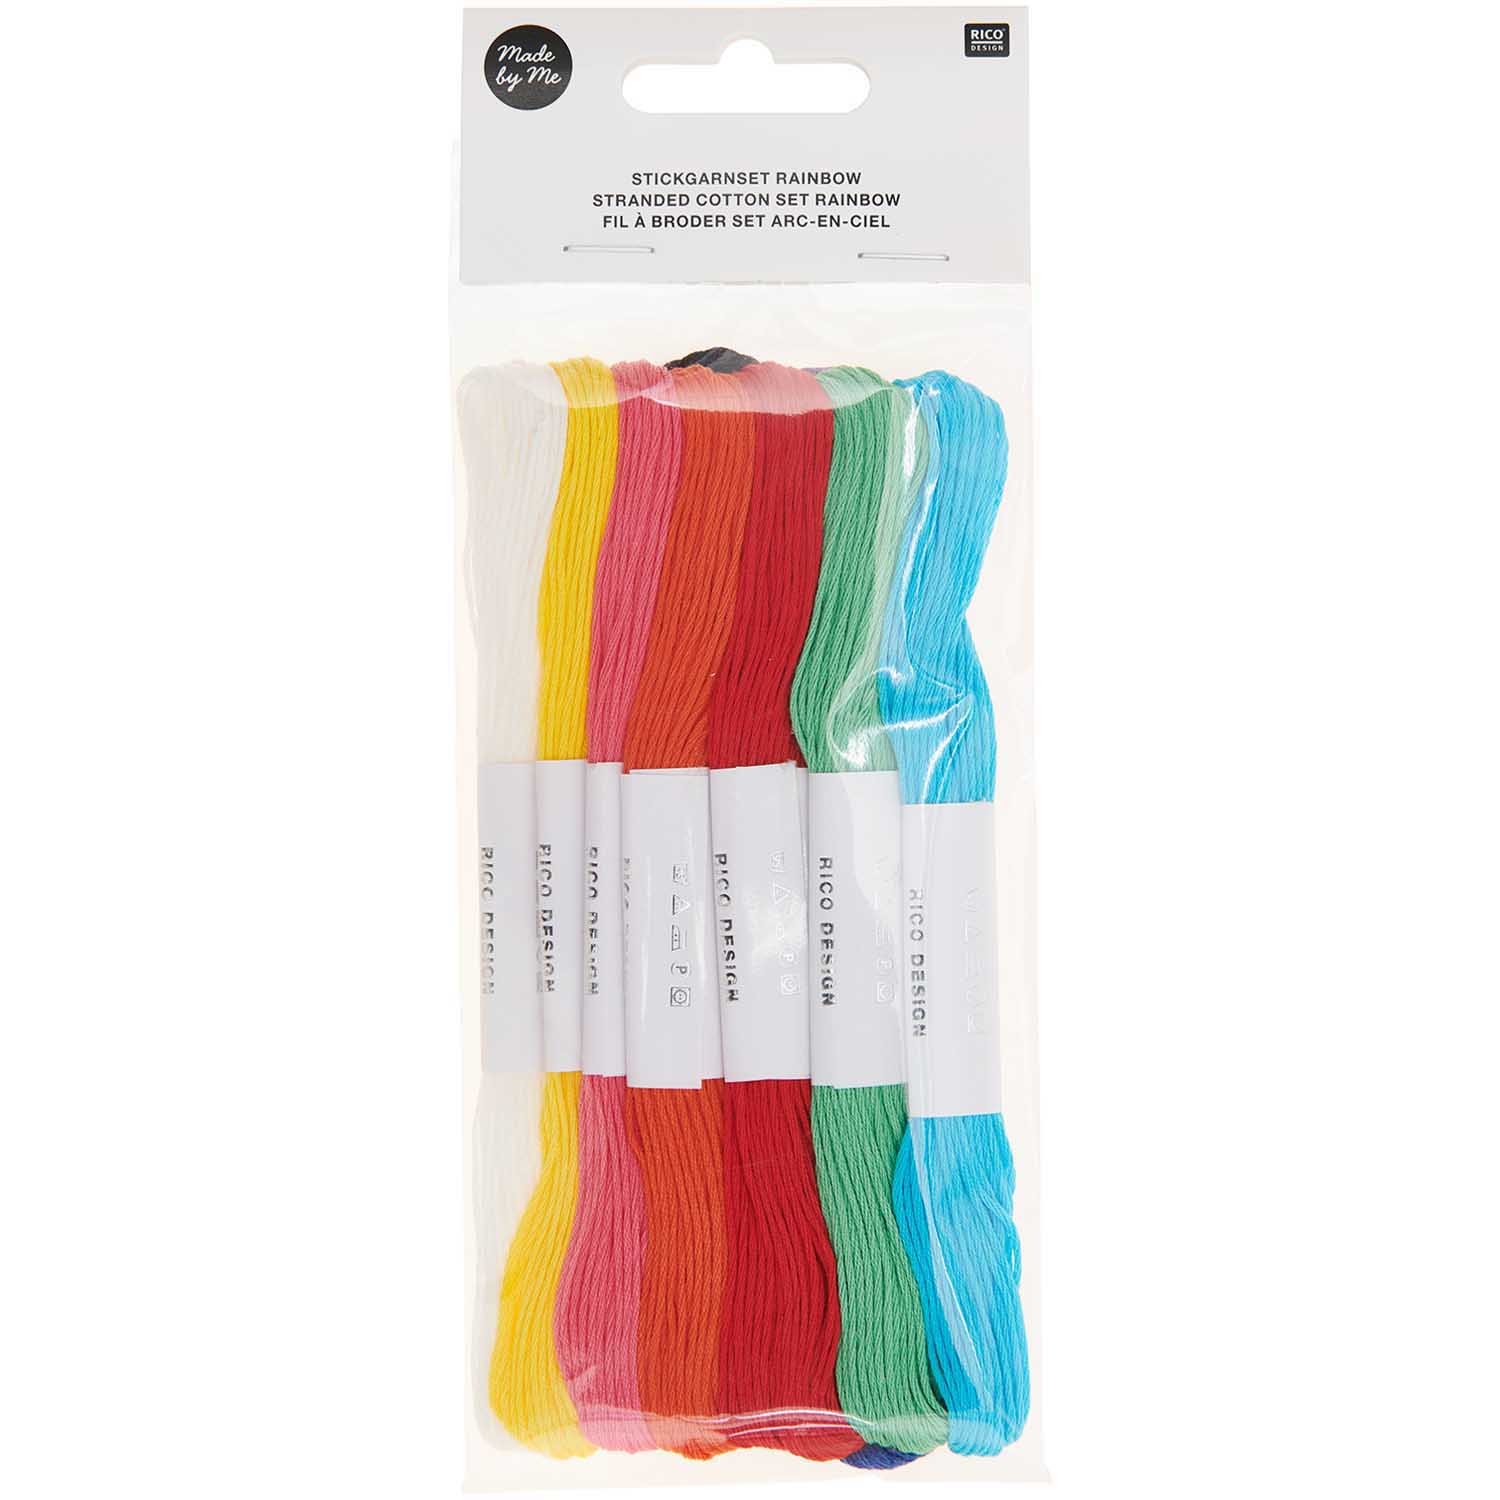 Stickgarnset Rainbow 100% Baumwolle 6-fädig 10 versch. Farben 8m/Farbe